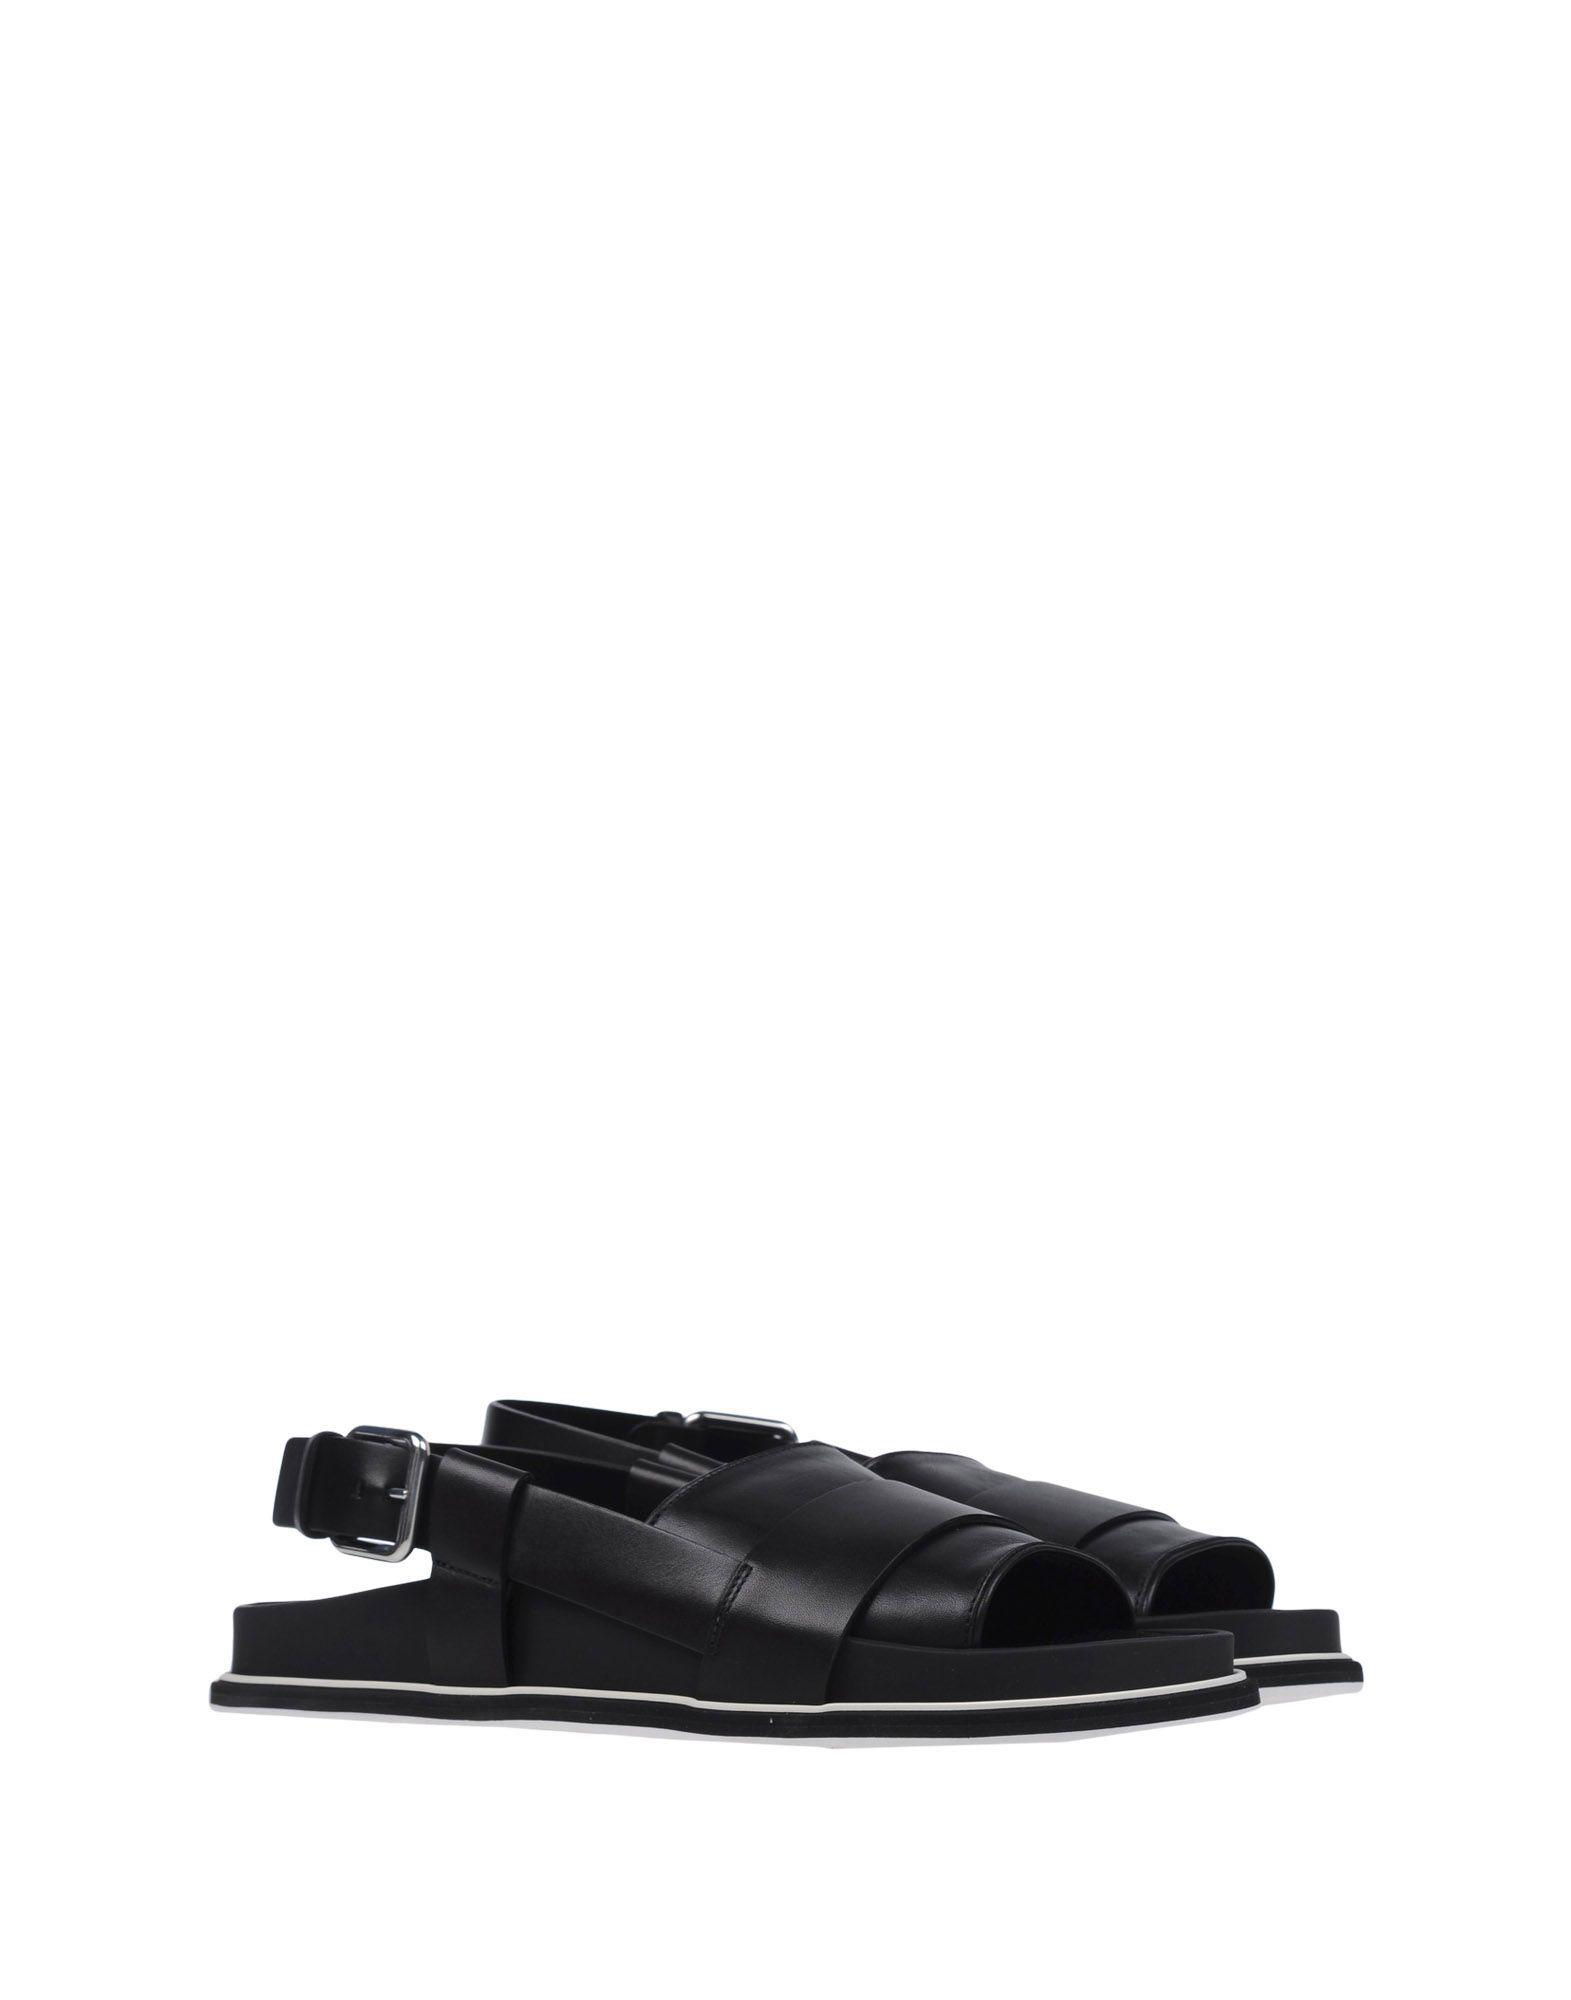 Jil Sander Leather Sandals in Black for Men - Lyst